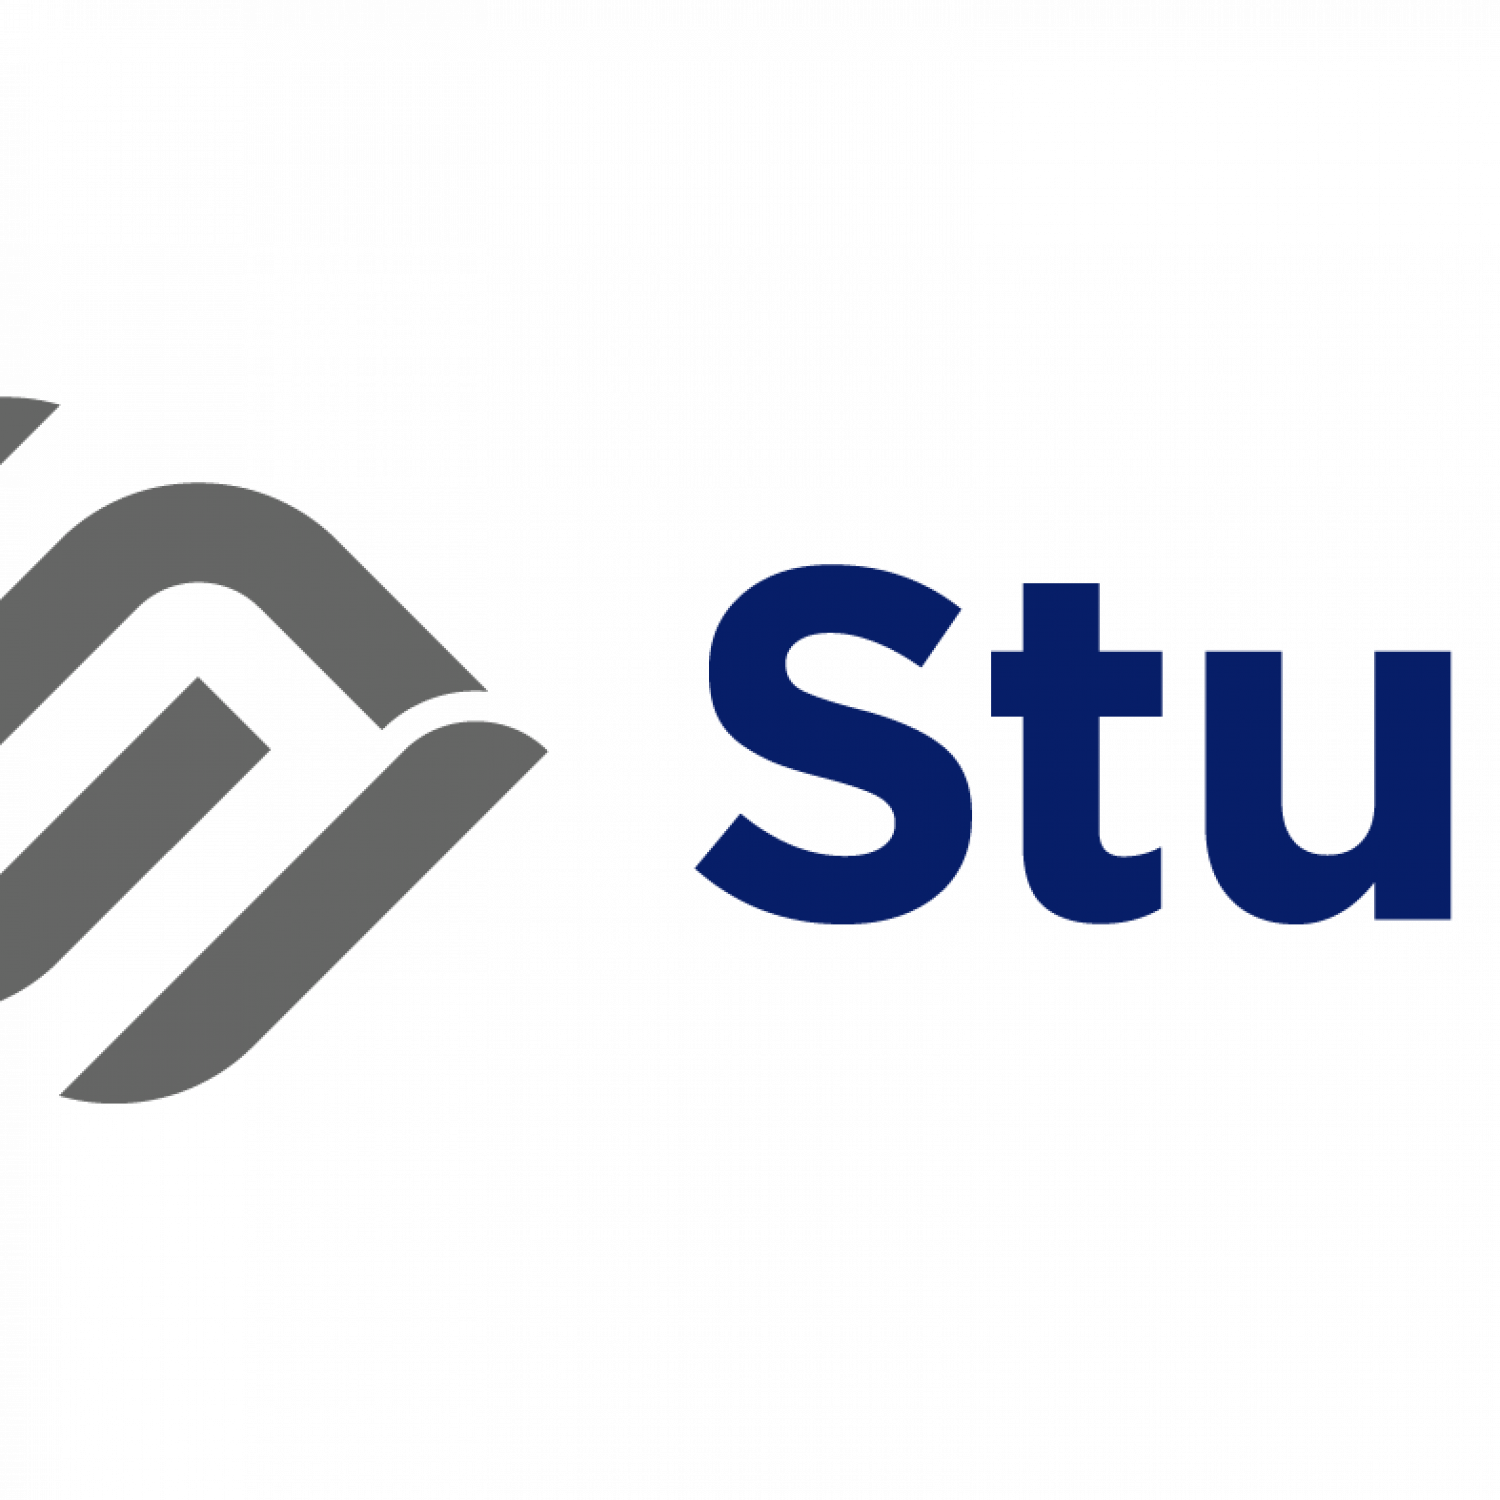 Sturli logo - Trans Full Colour Pos